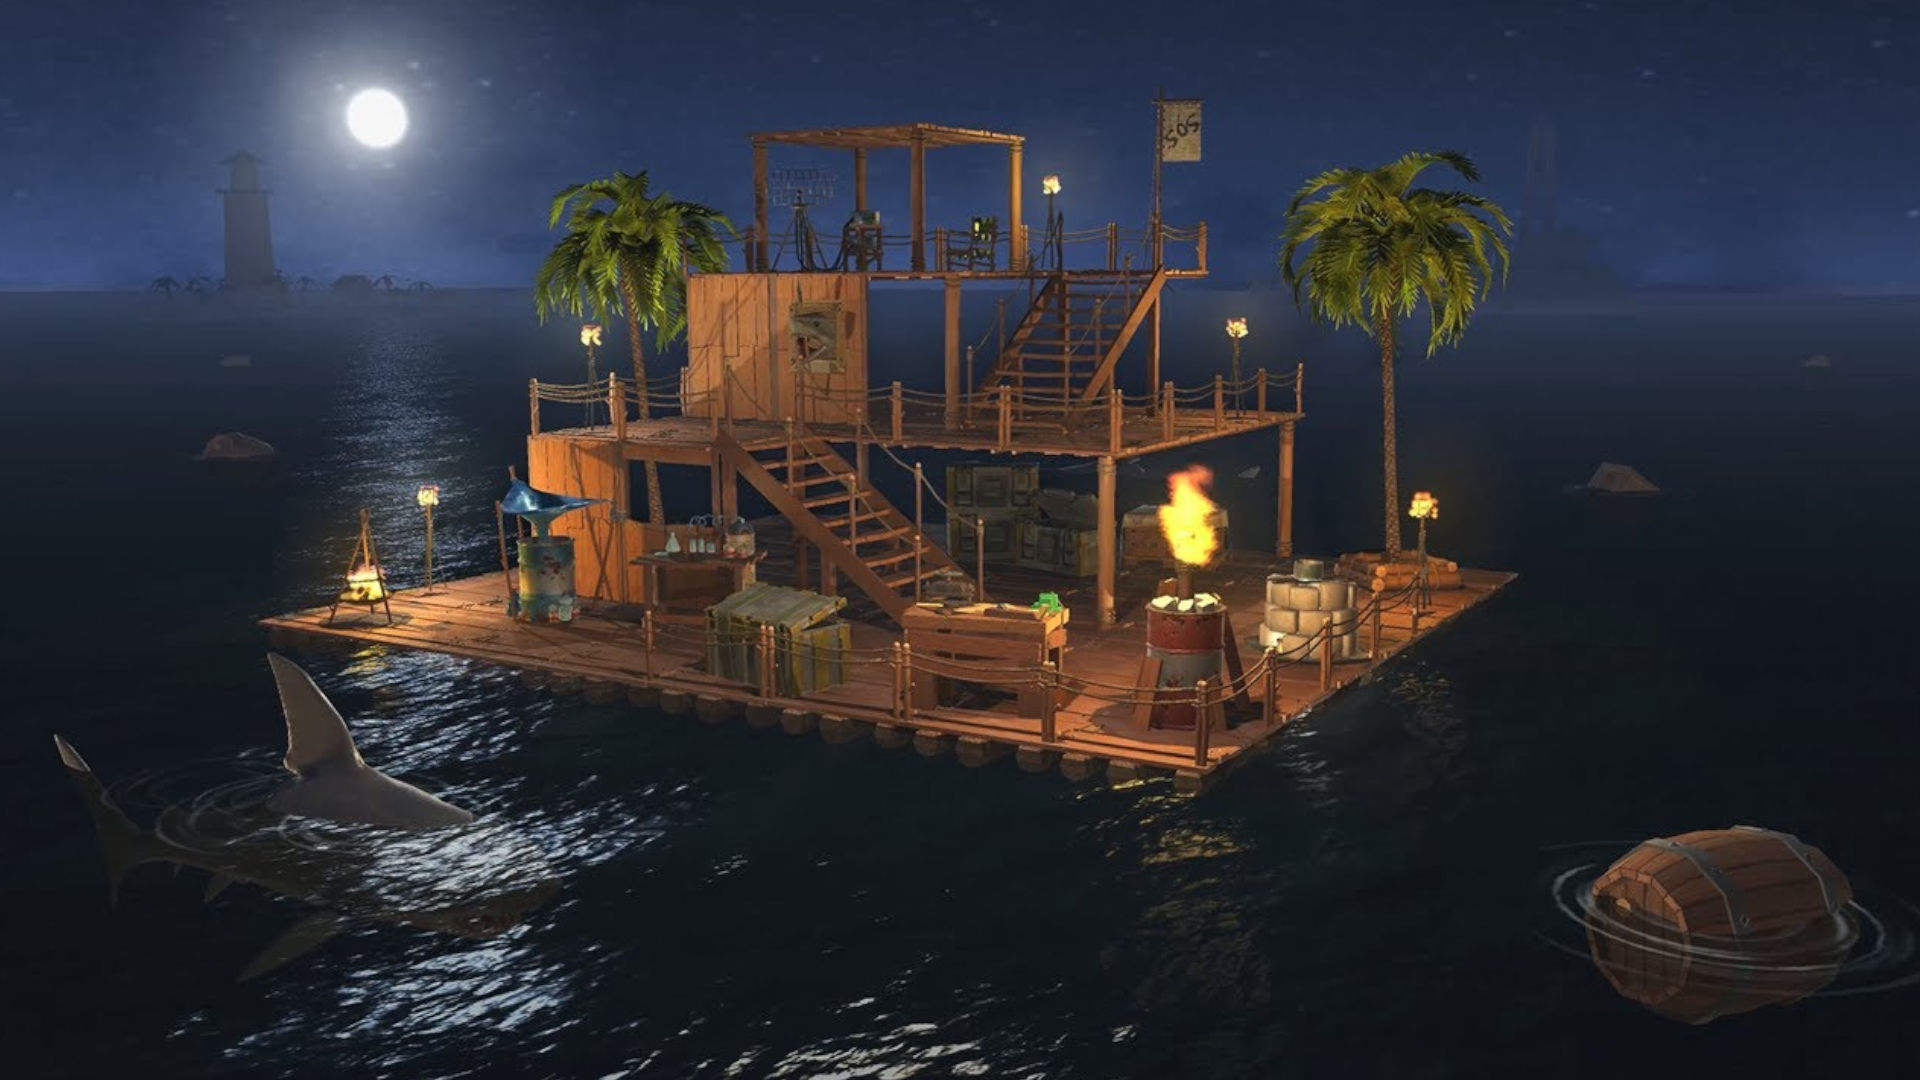 ภาพหน้าจอของแพจาก Raft Survival Ocean Nomad สำหรับรายชื่อเกมเอาชีวิตรอด